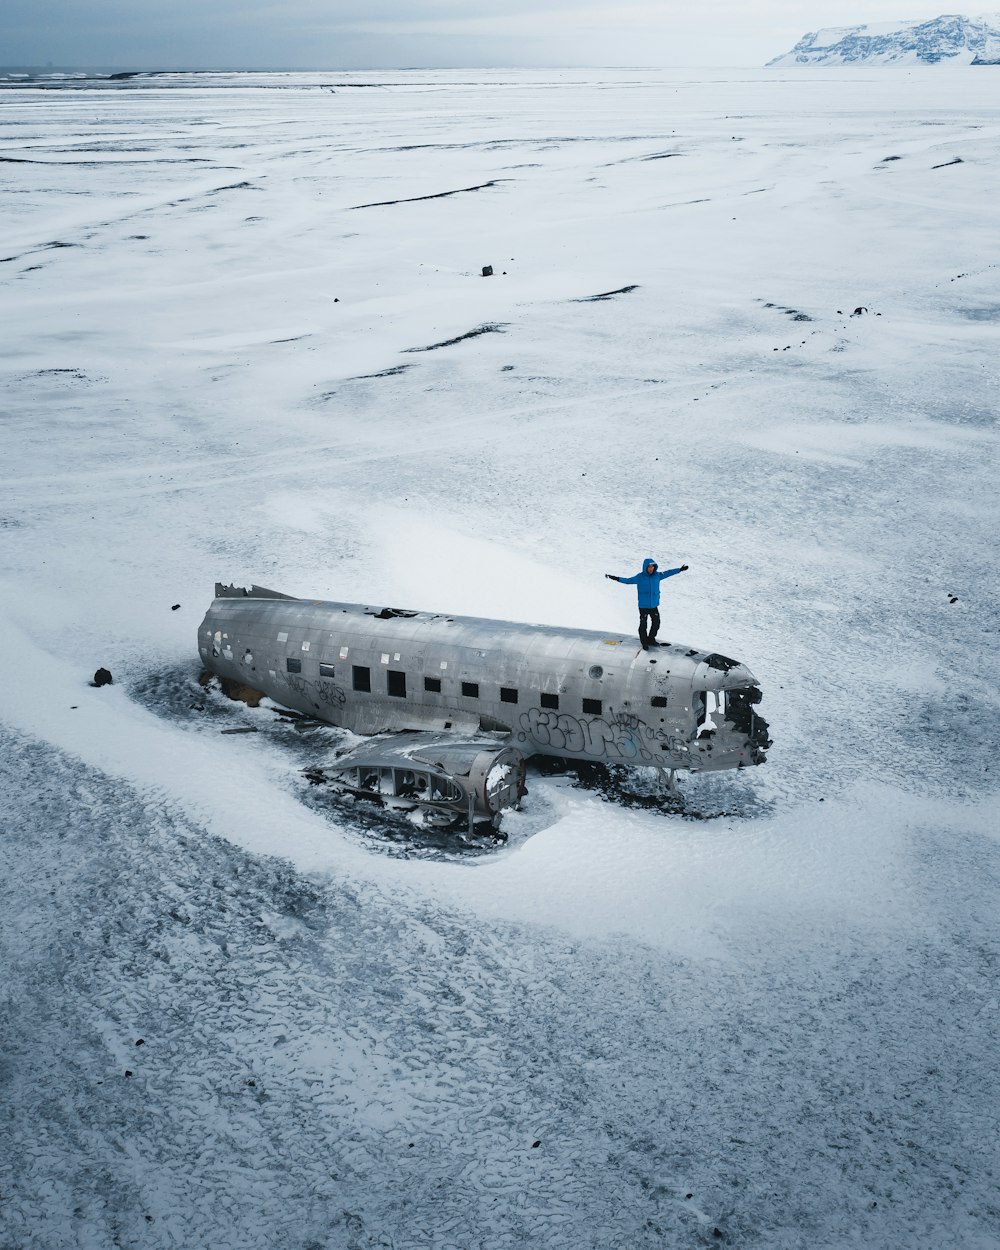 Schwarz-Weiß-Schiff tagsüber auf schneebedecktem Boden